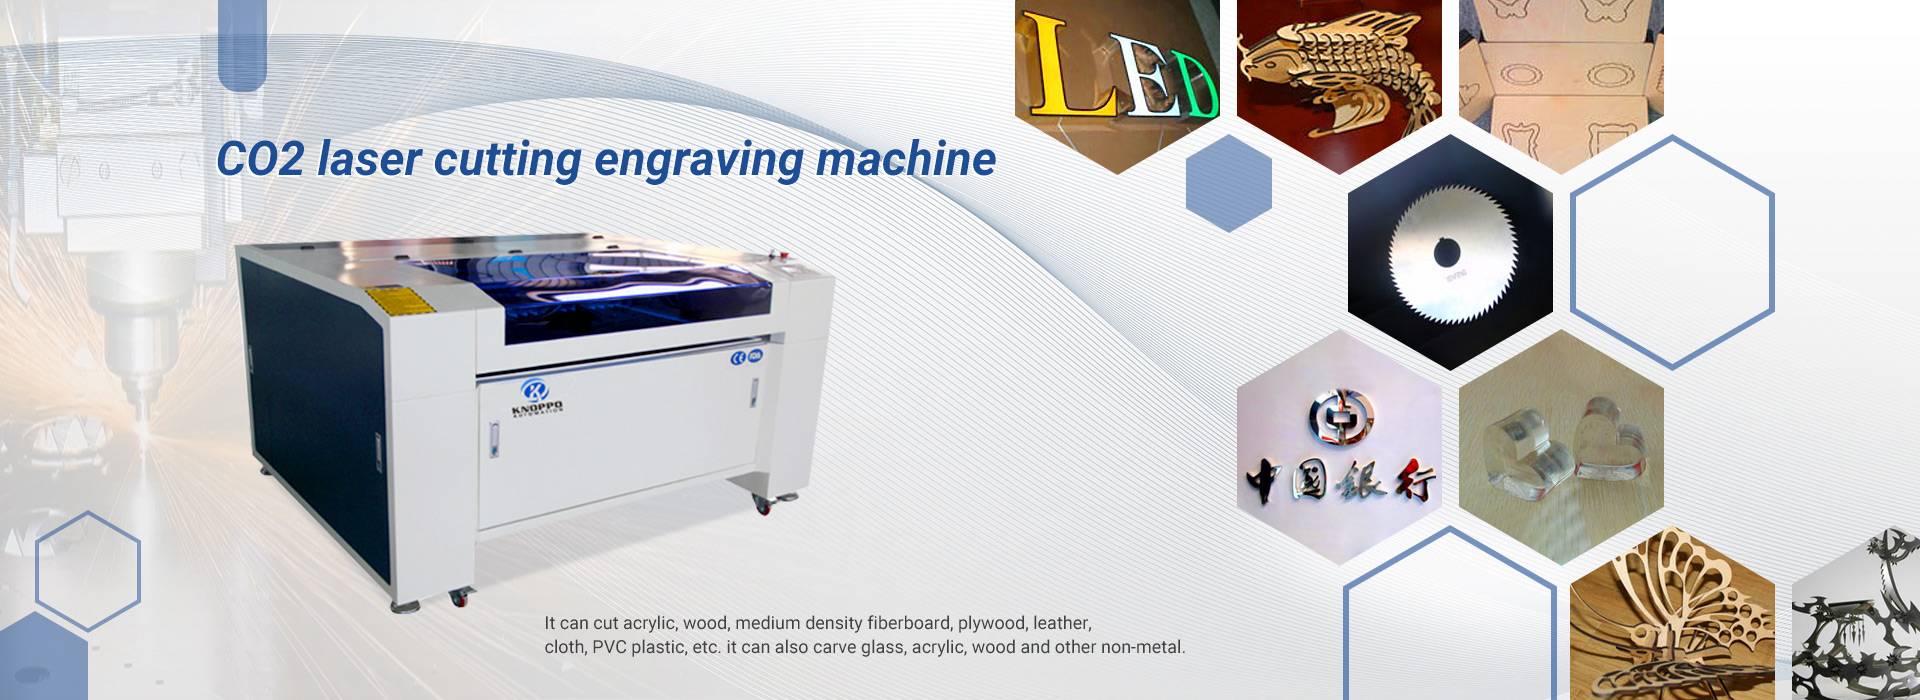 macchina per incisione di taglio laser co2